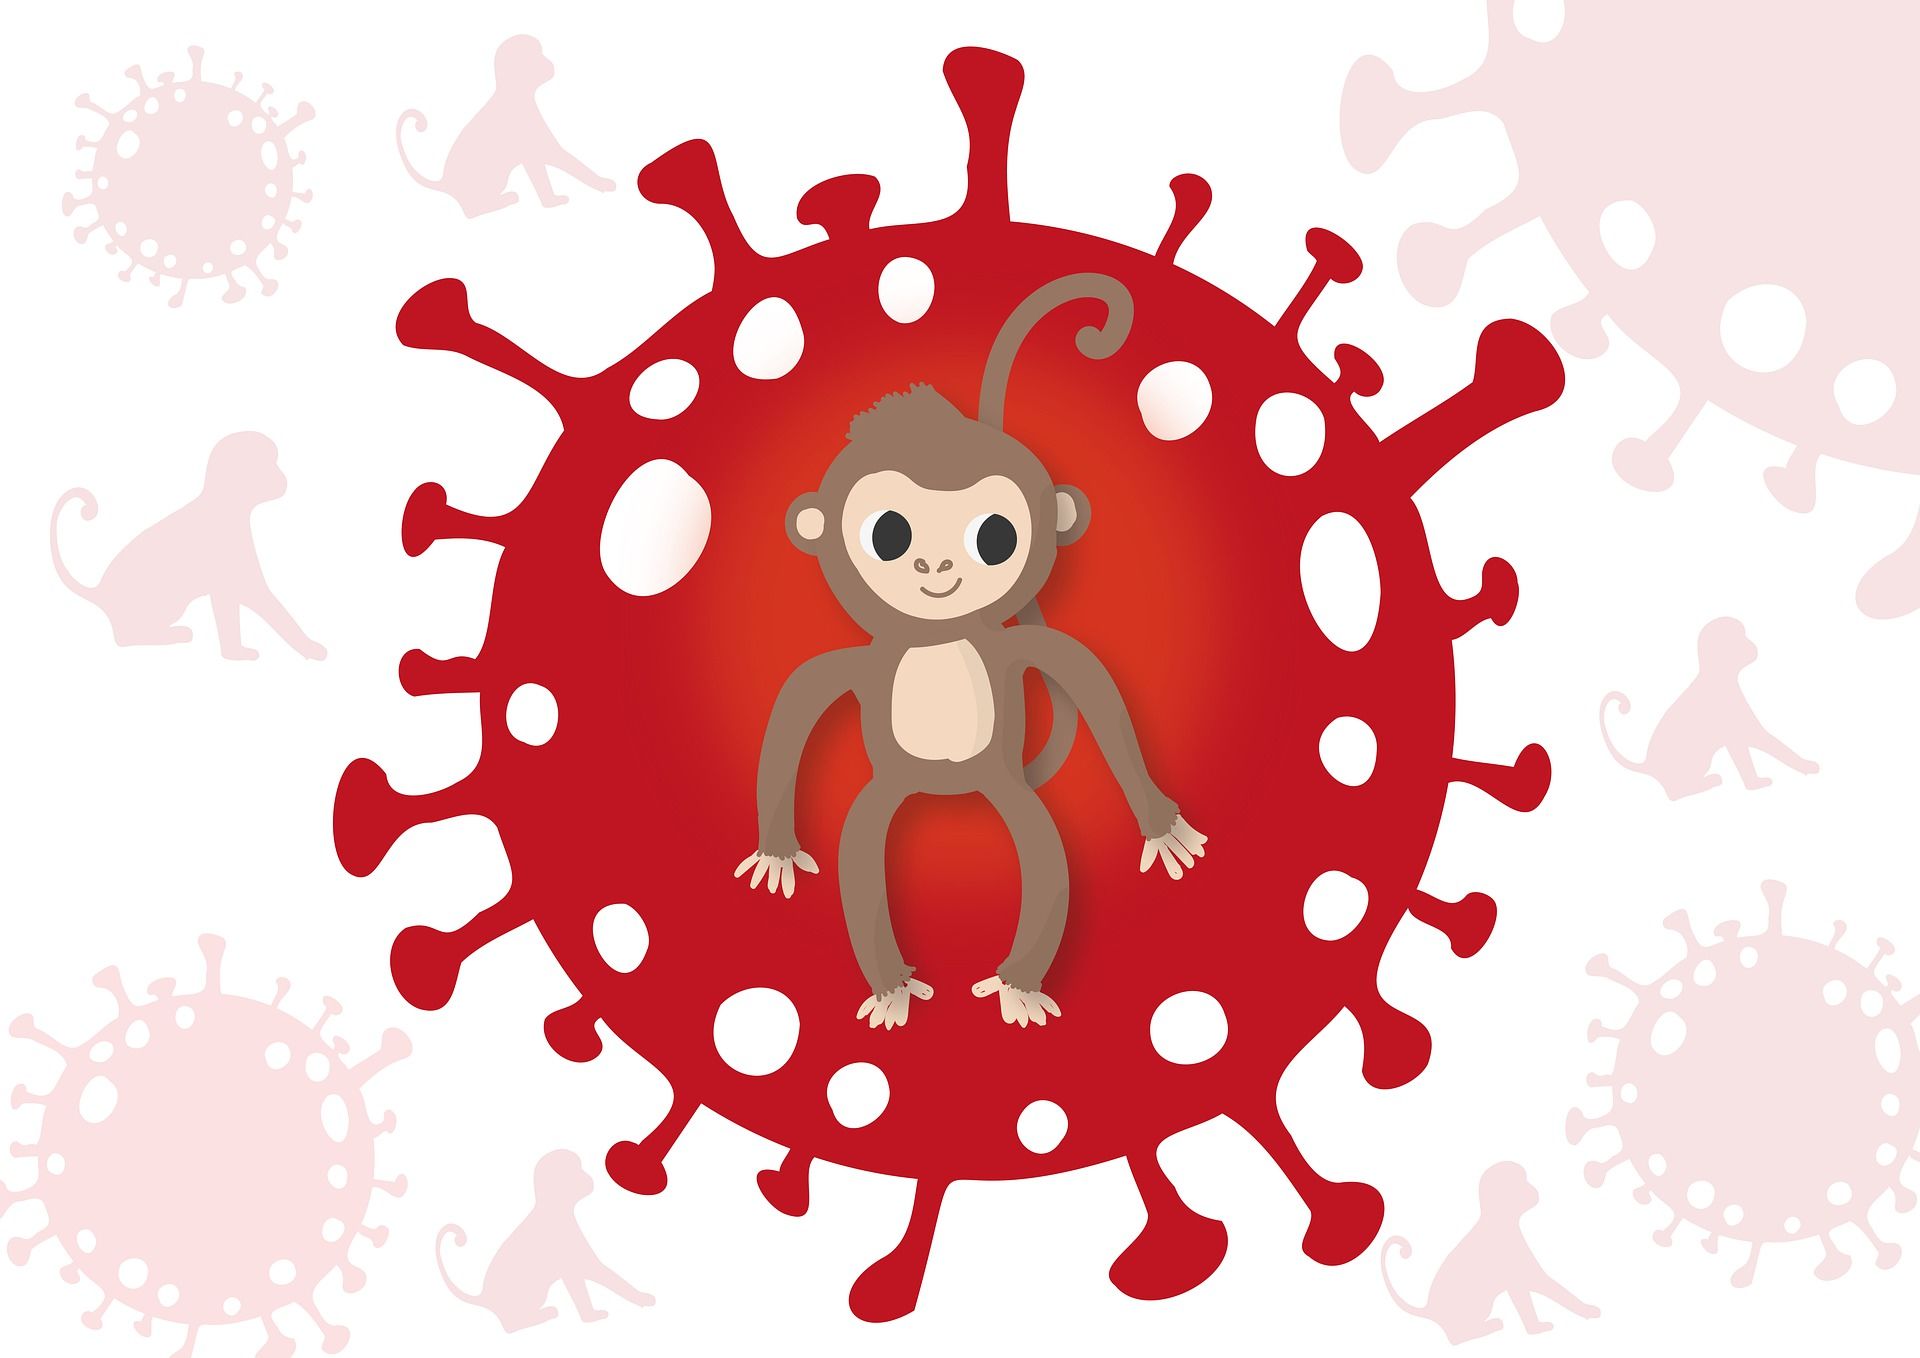 Обезьяний герпес. Monkeypox virus (оспа обезьян).